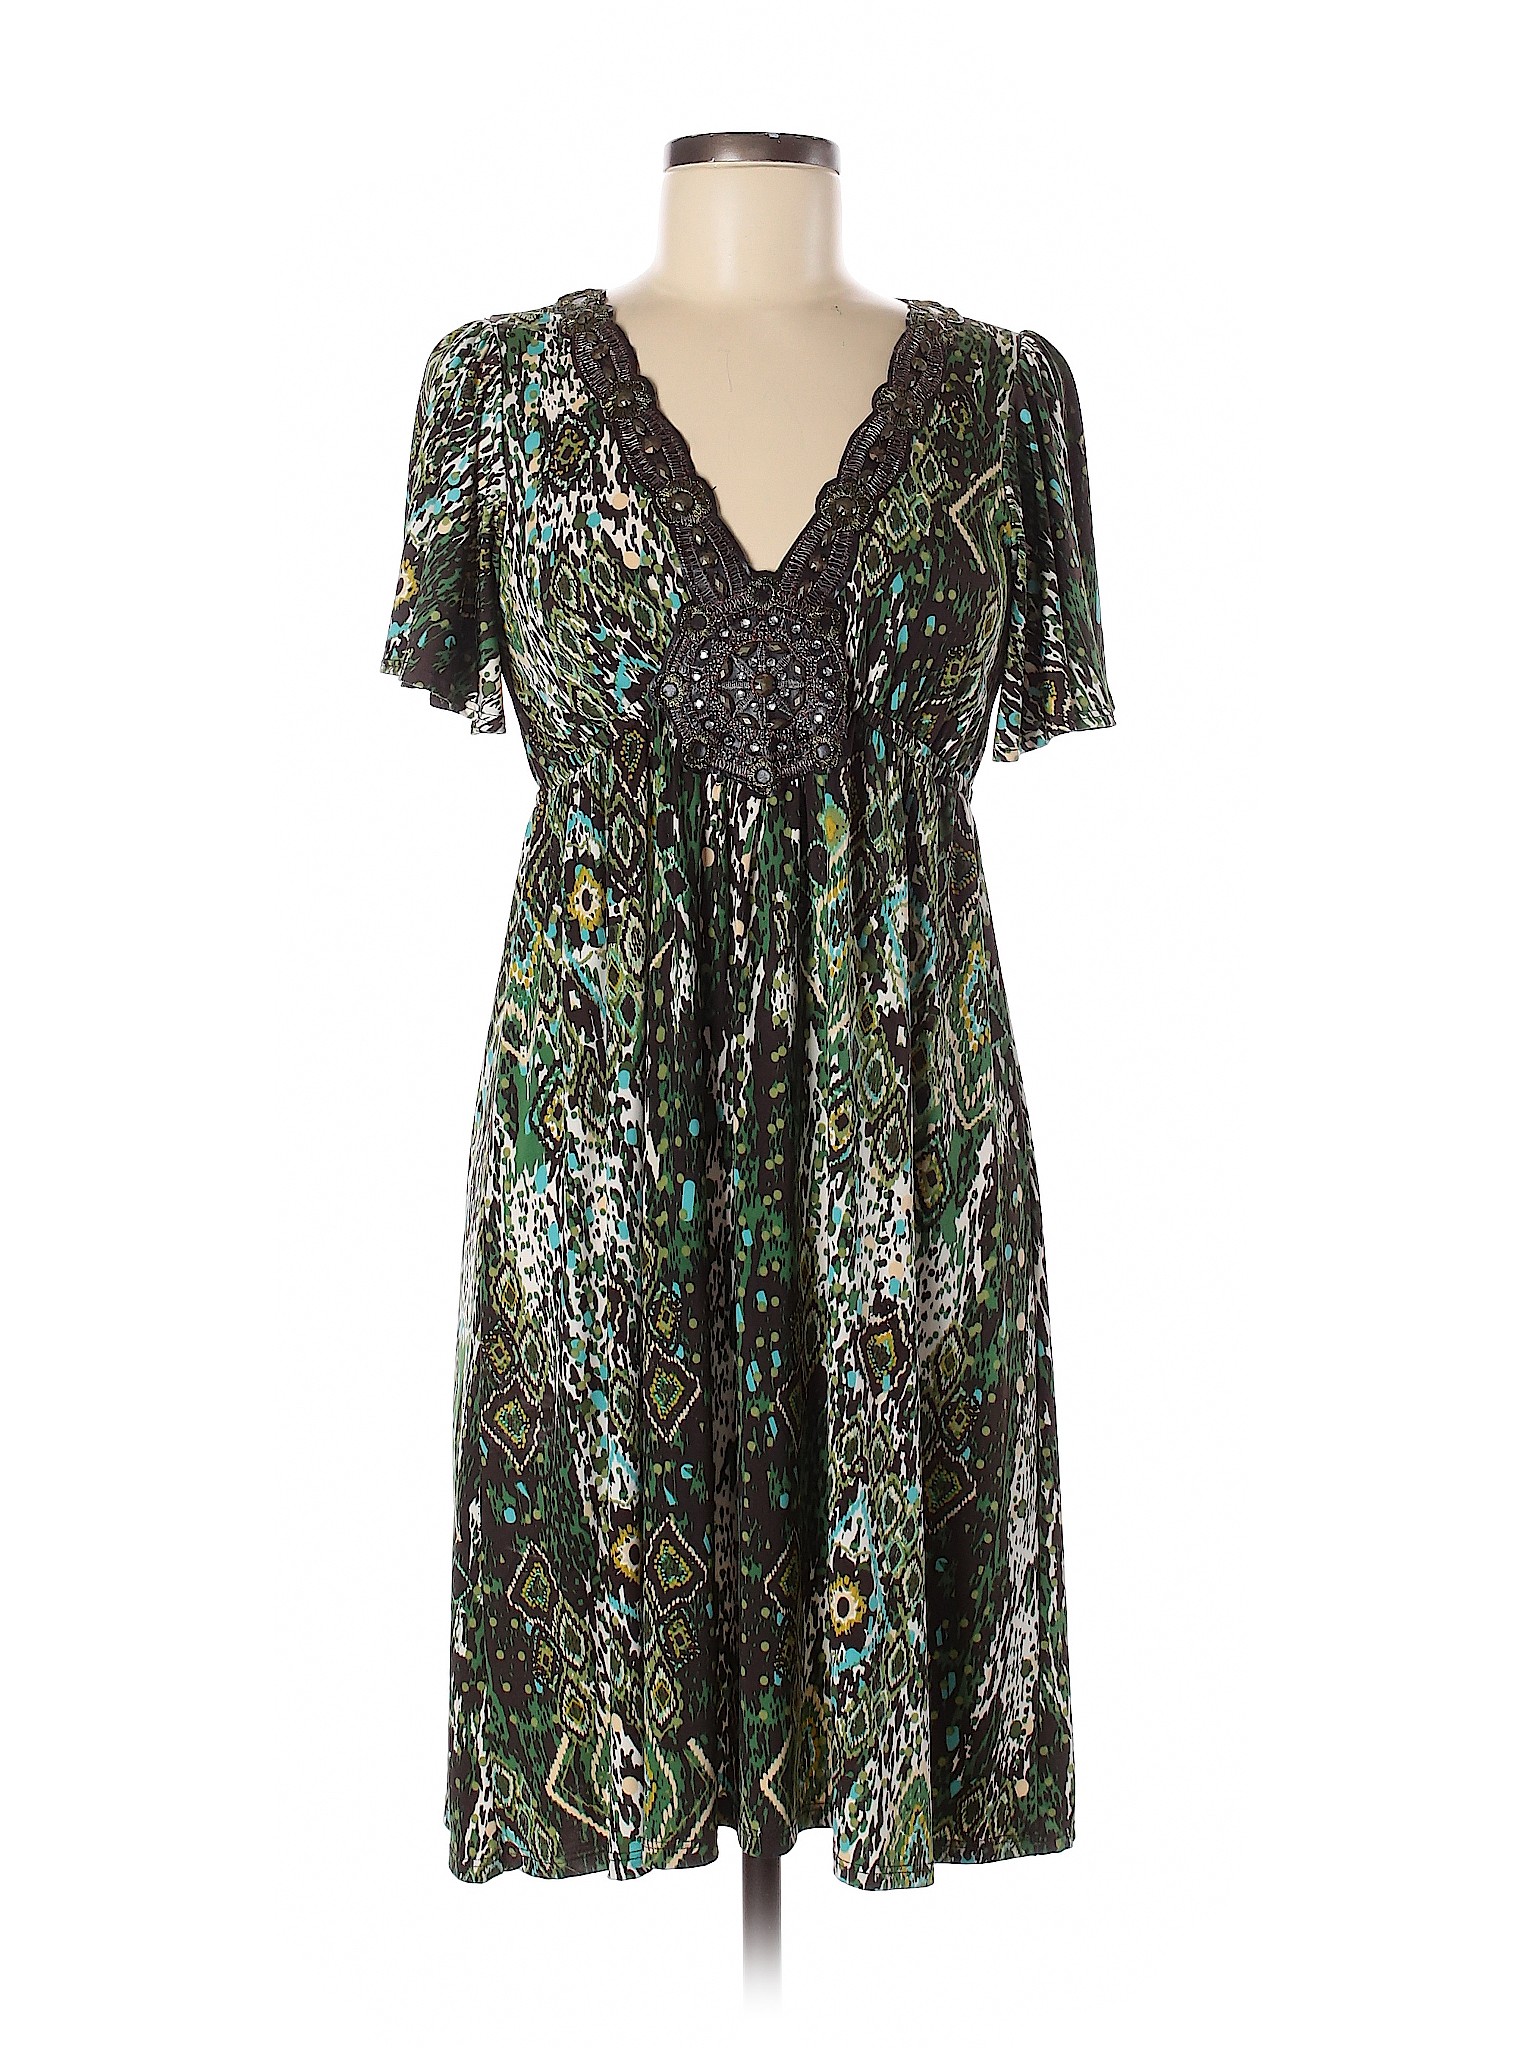 Mon Amie Women Green Casual Dress M | eBay